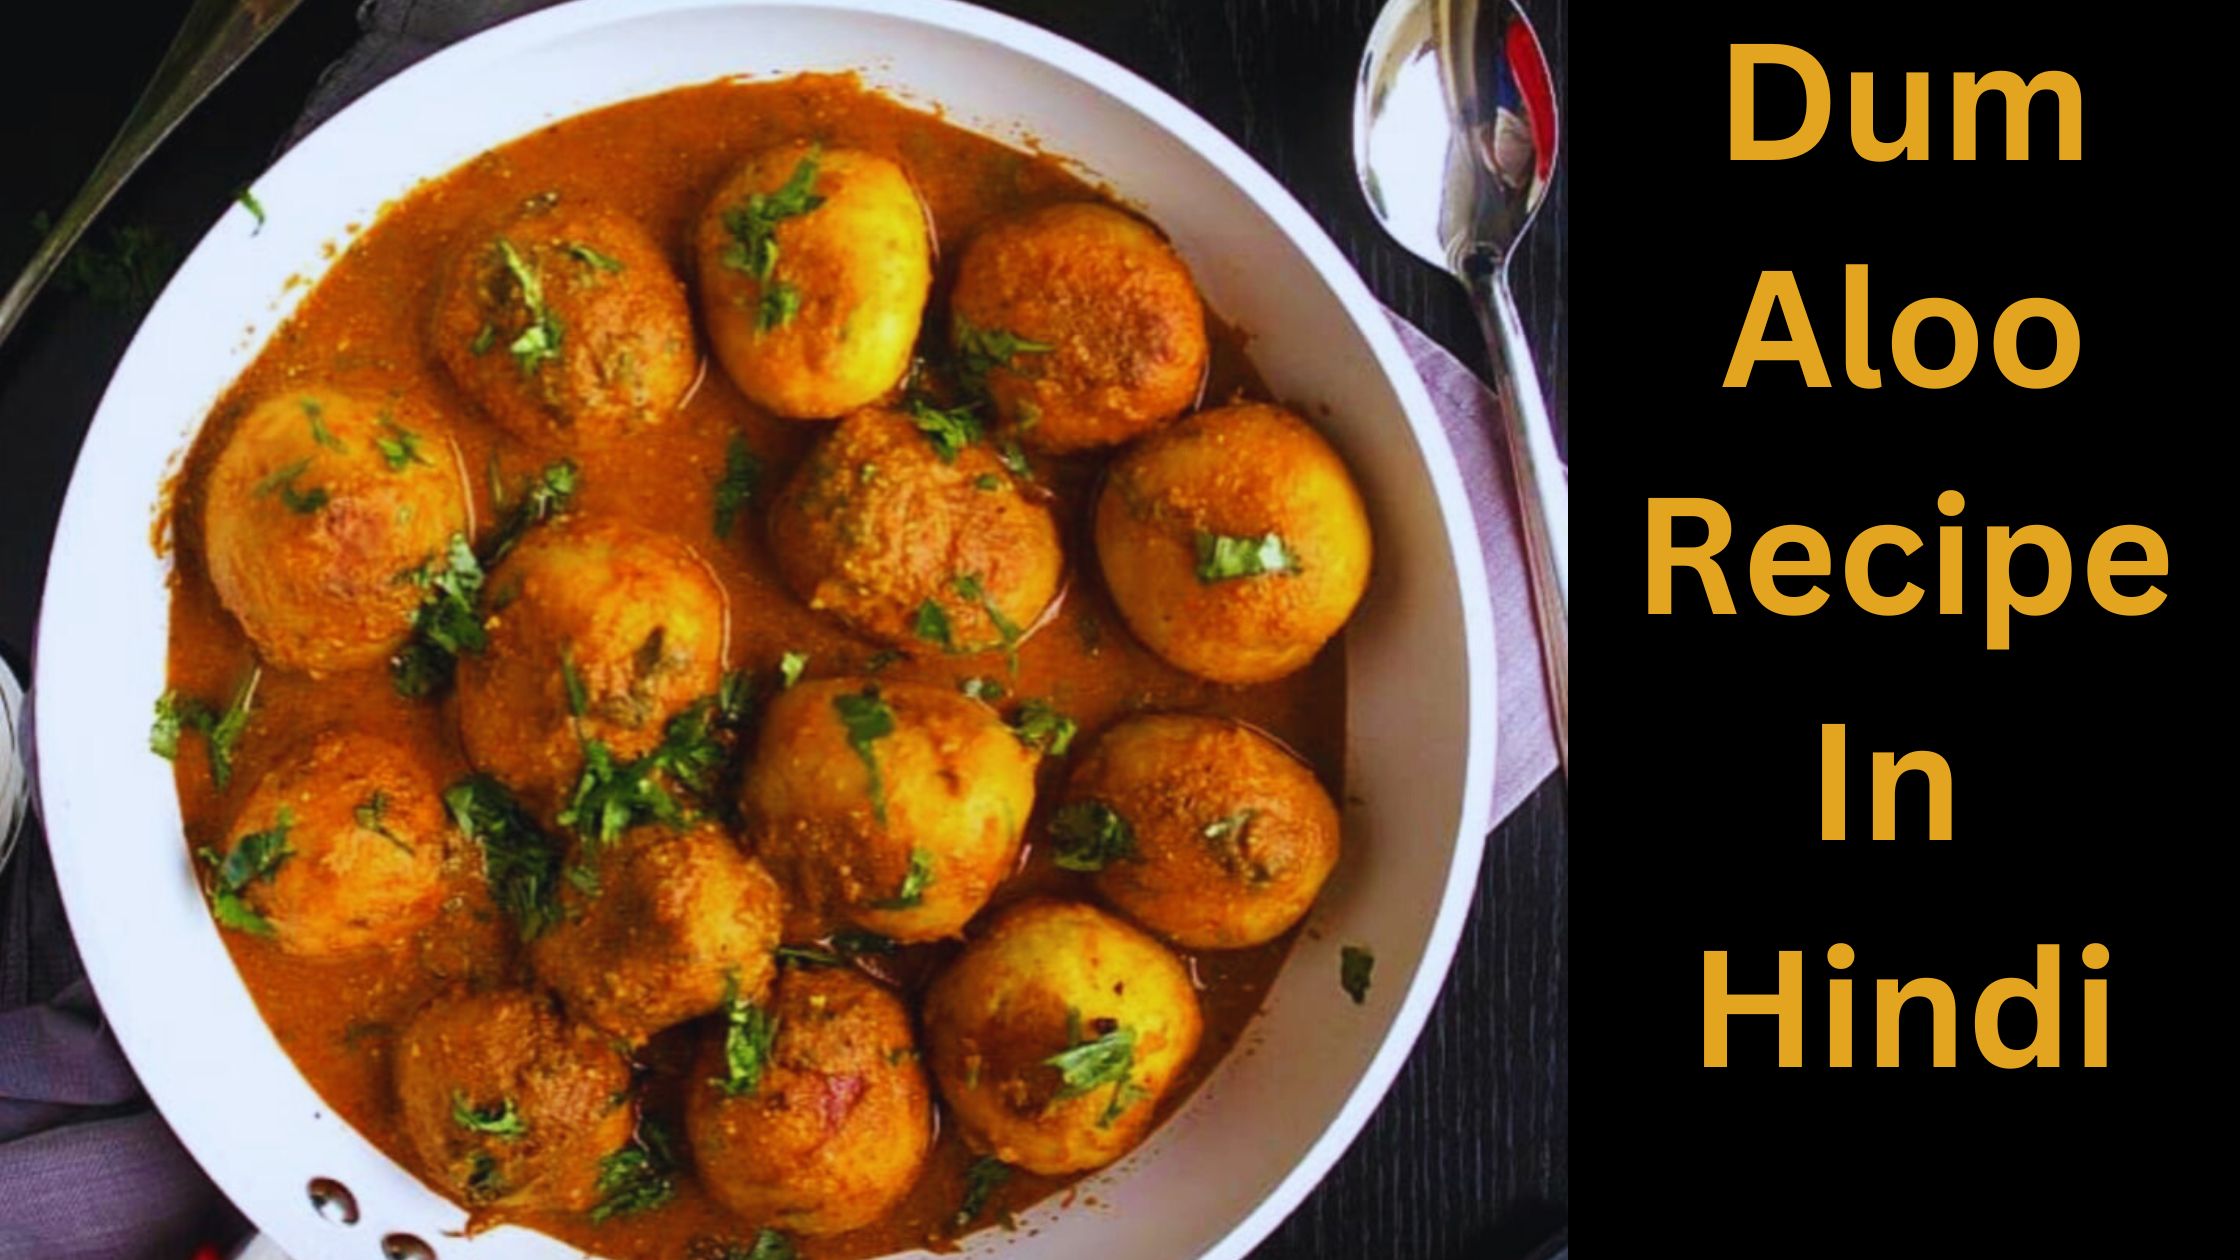 Dum Aloo Recipe In Hindi